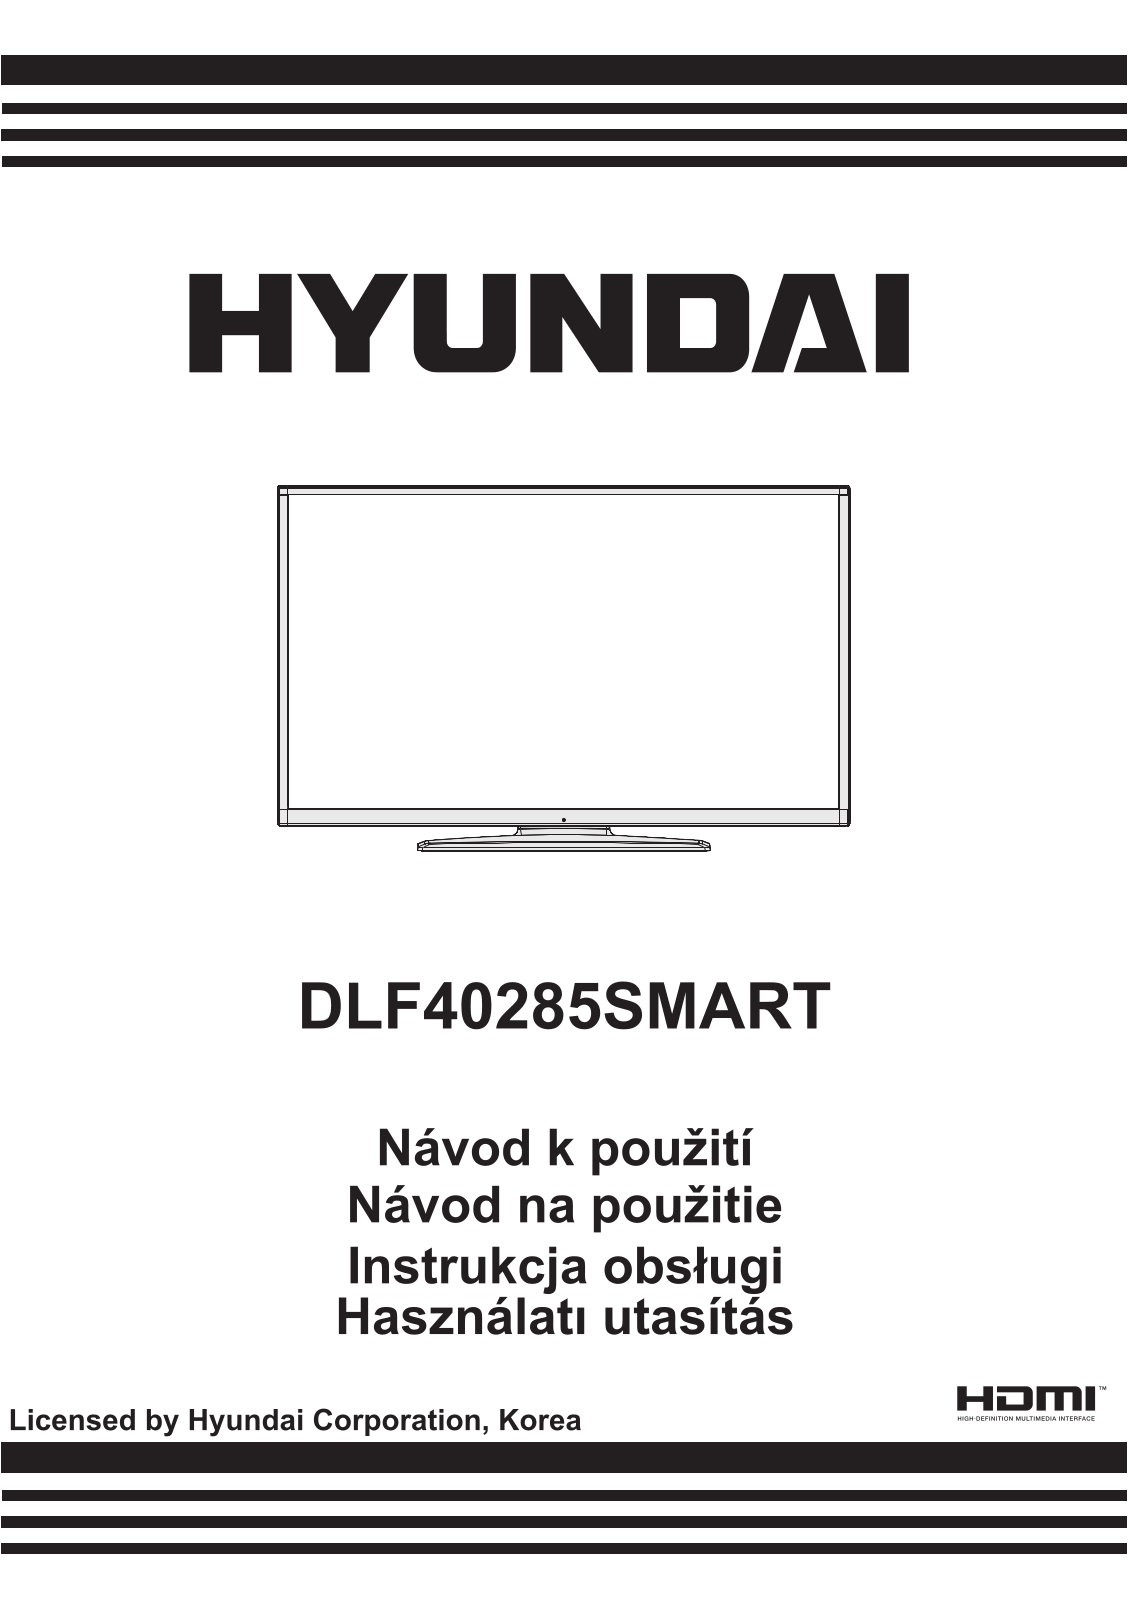 Hyundai DLF 40285 SMART User Manual